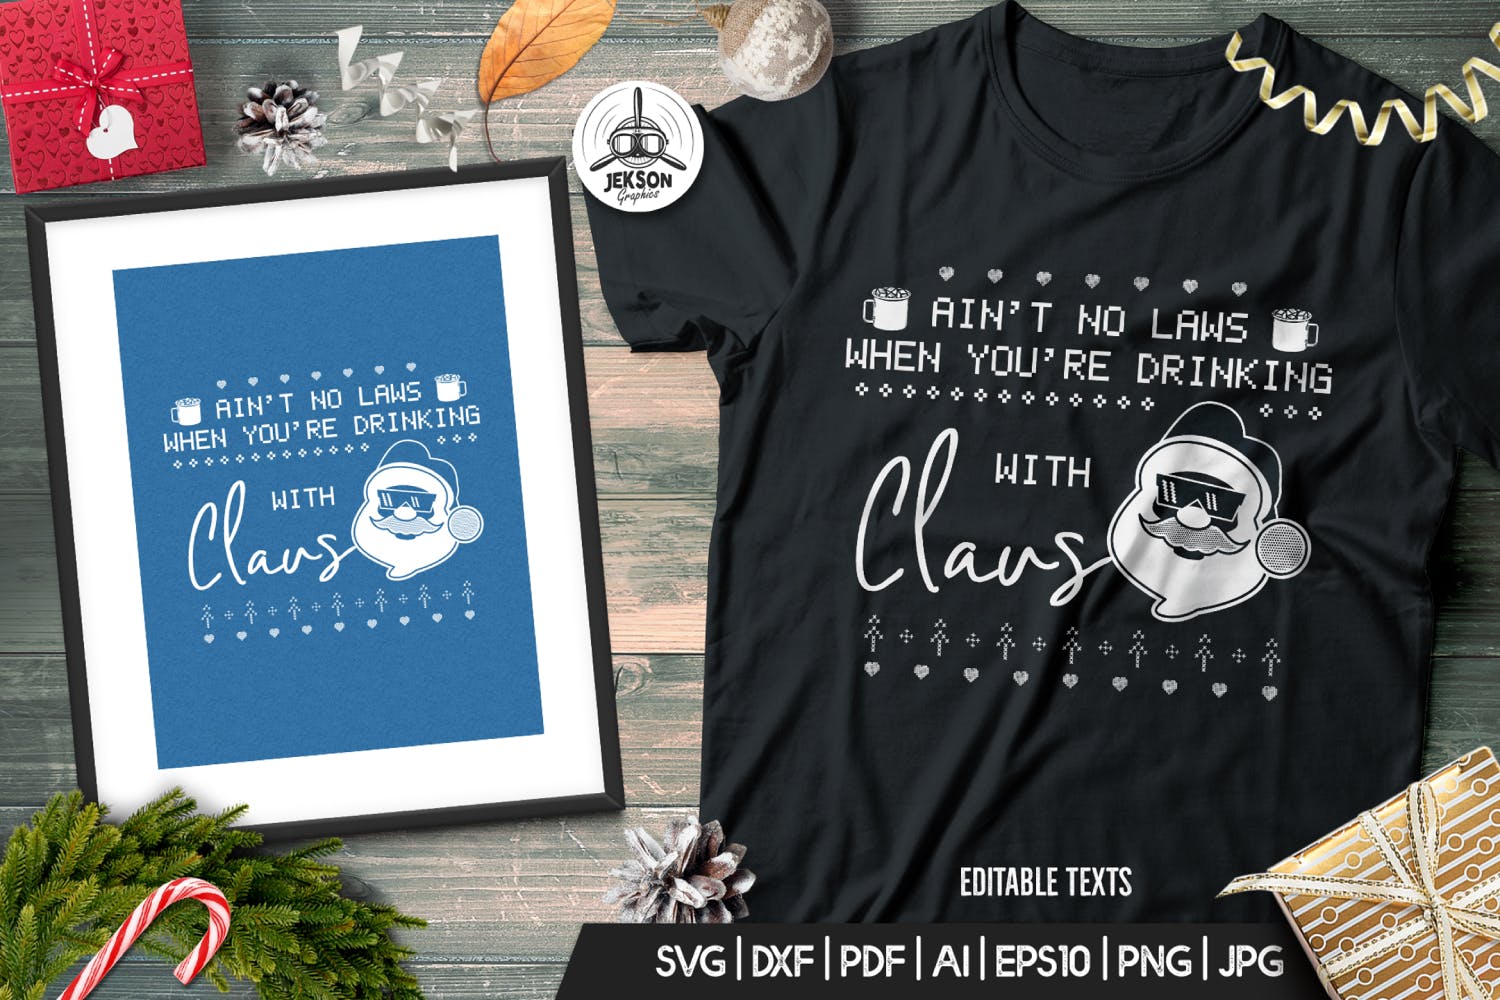 情人套装圣诞节主题T恤圣诞老人印花图案设计素材 Santa Christmas Ugly Print Template, TShirt Design插图1